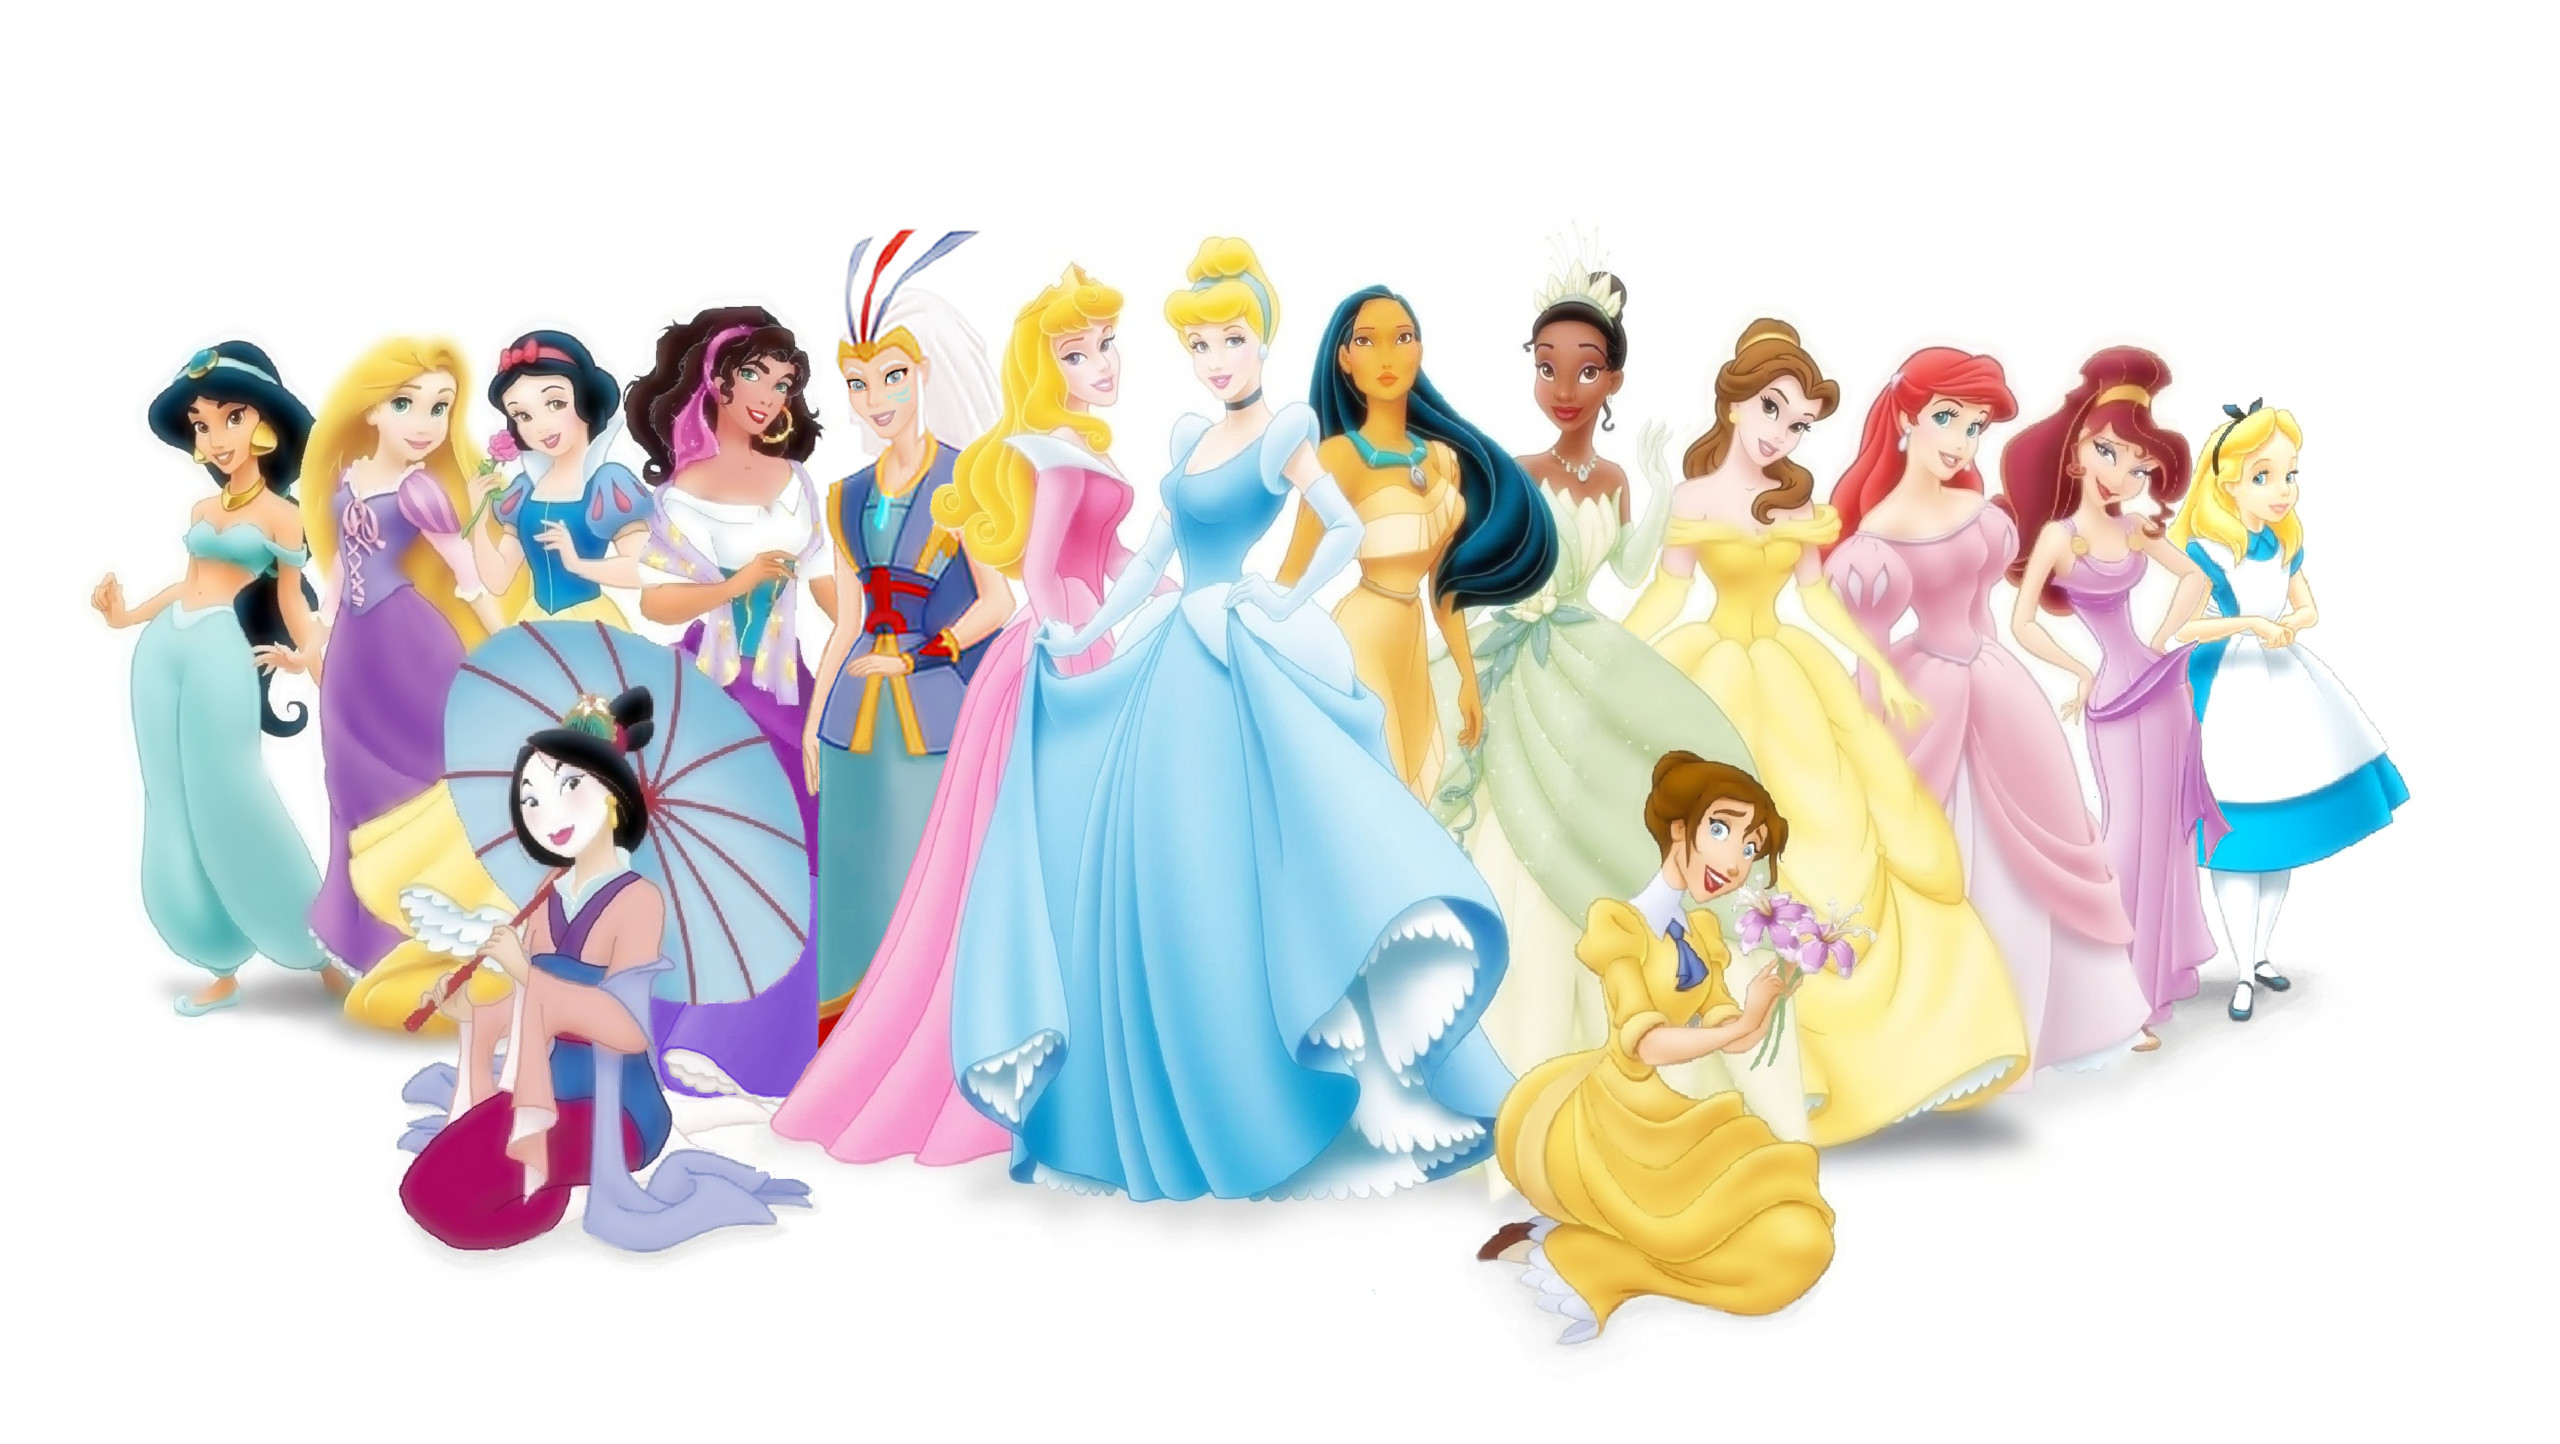 Disney princess images qygjxz princess wallpapers